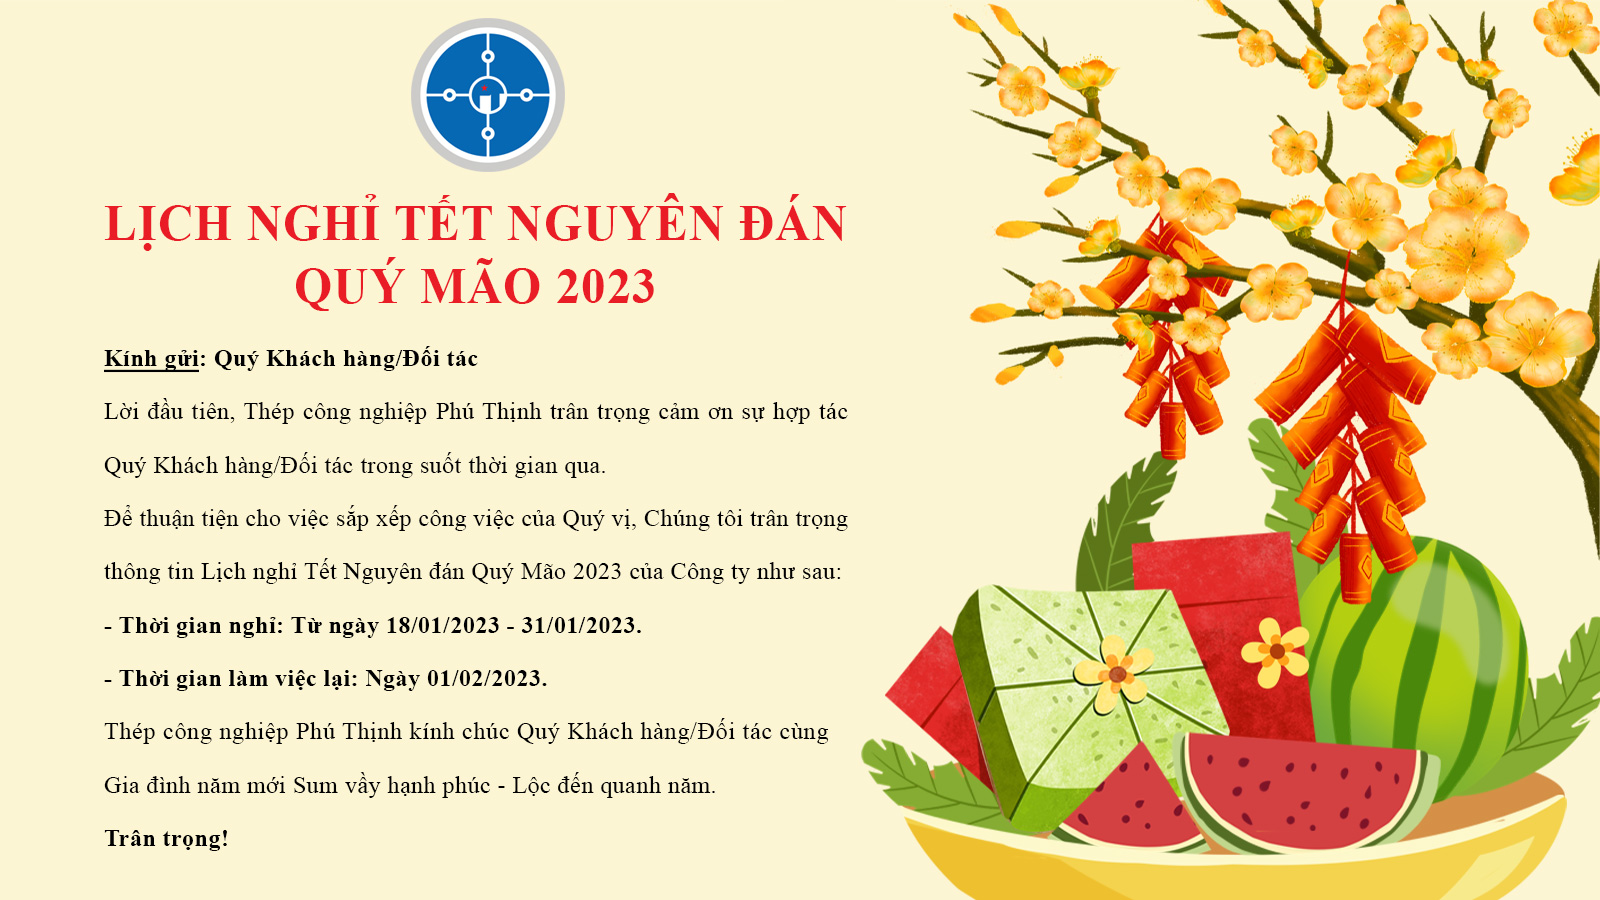 Lịch nghỉ tết Quý Mão 2023 - Thép công nghiệp Phú Thịnh